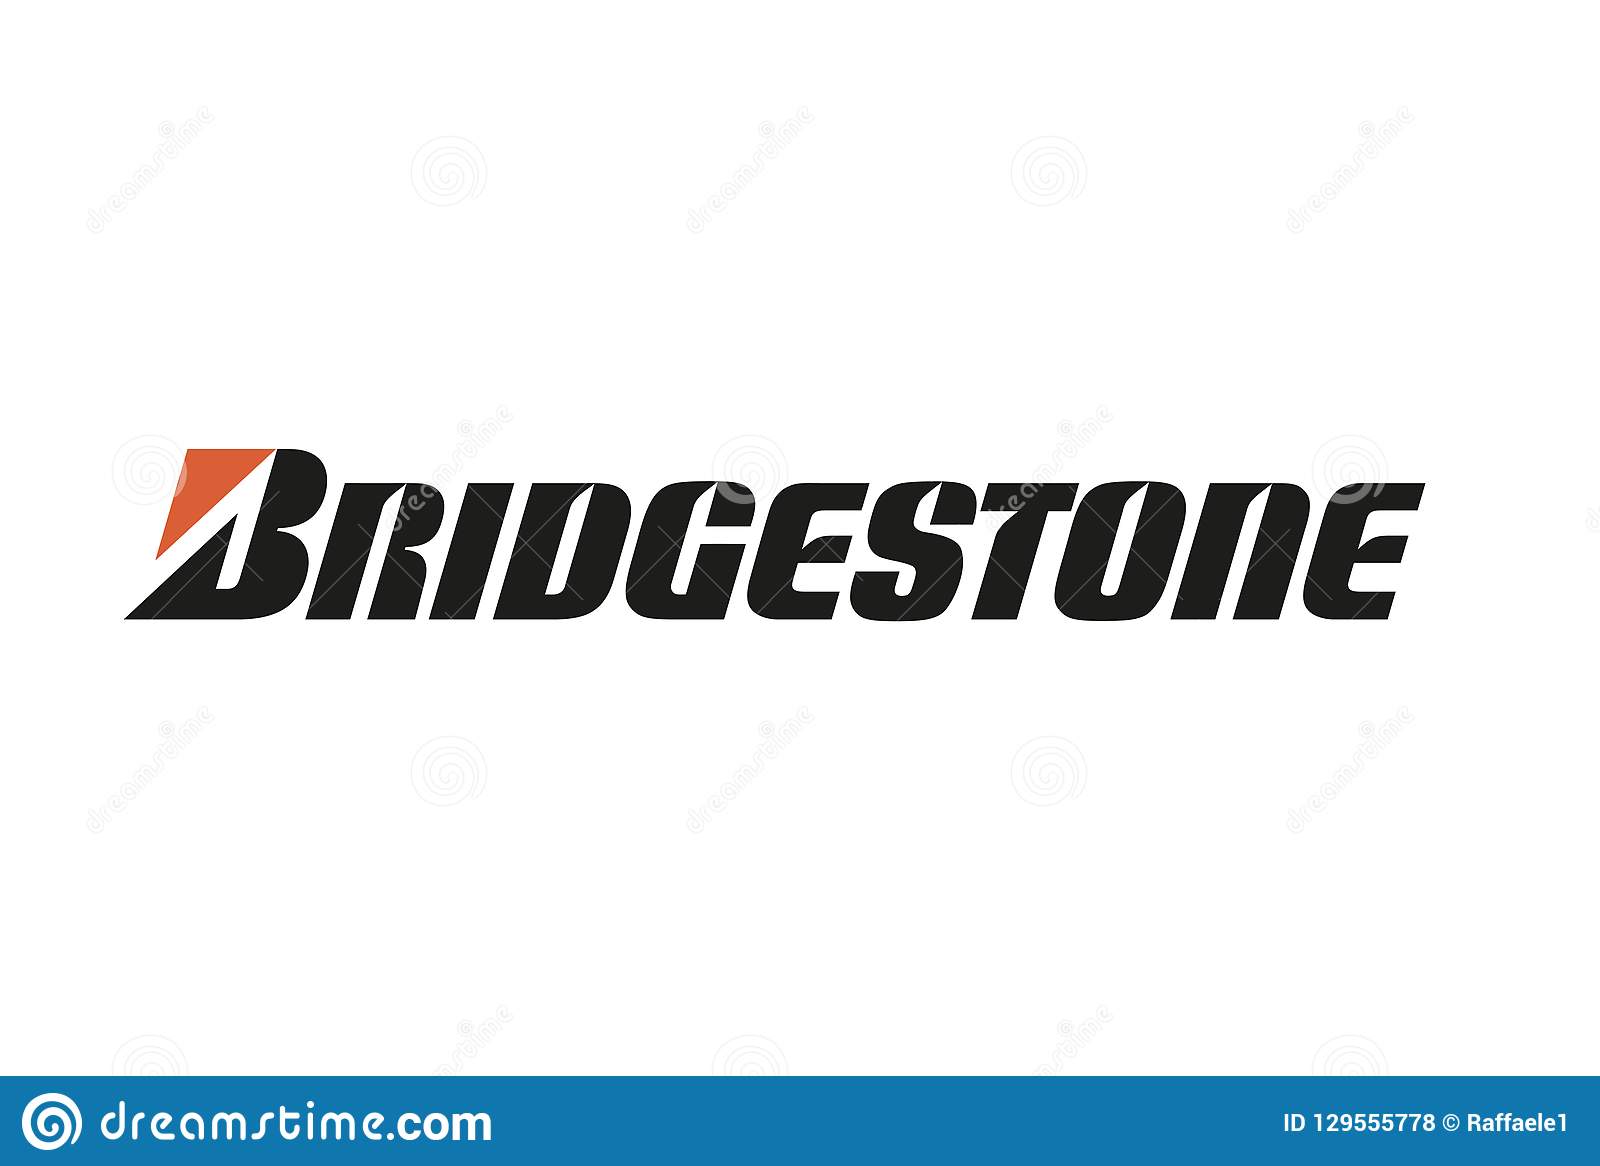 Bridgestone dezvăluie sigla actualizată